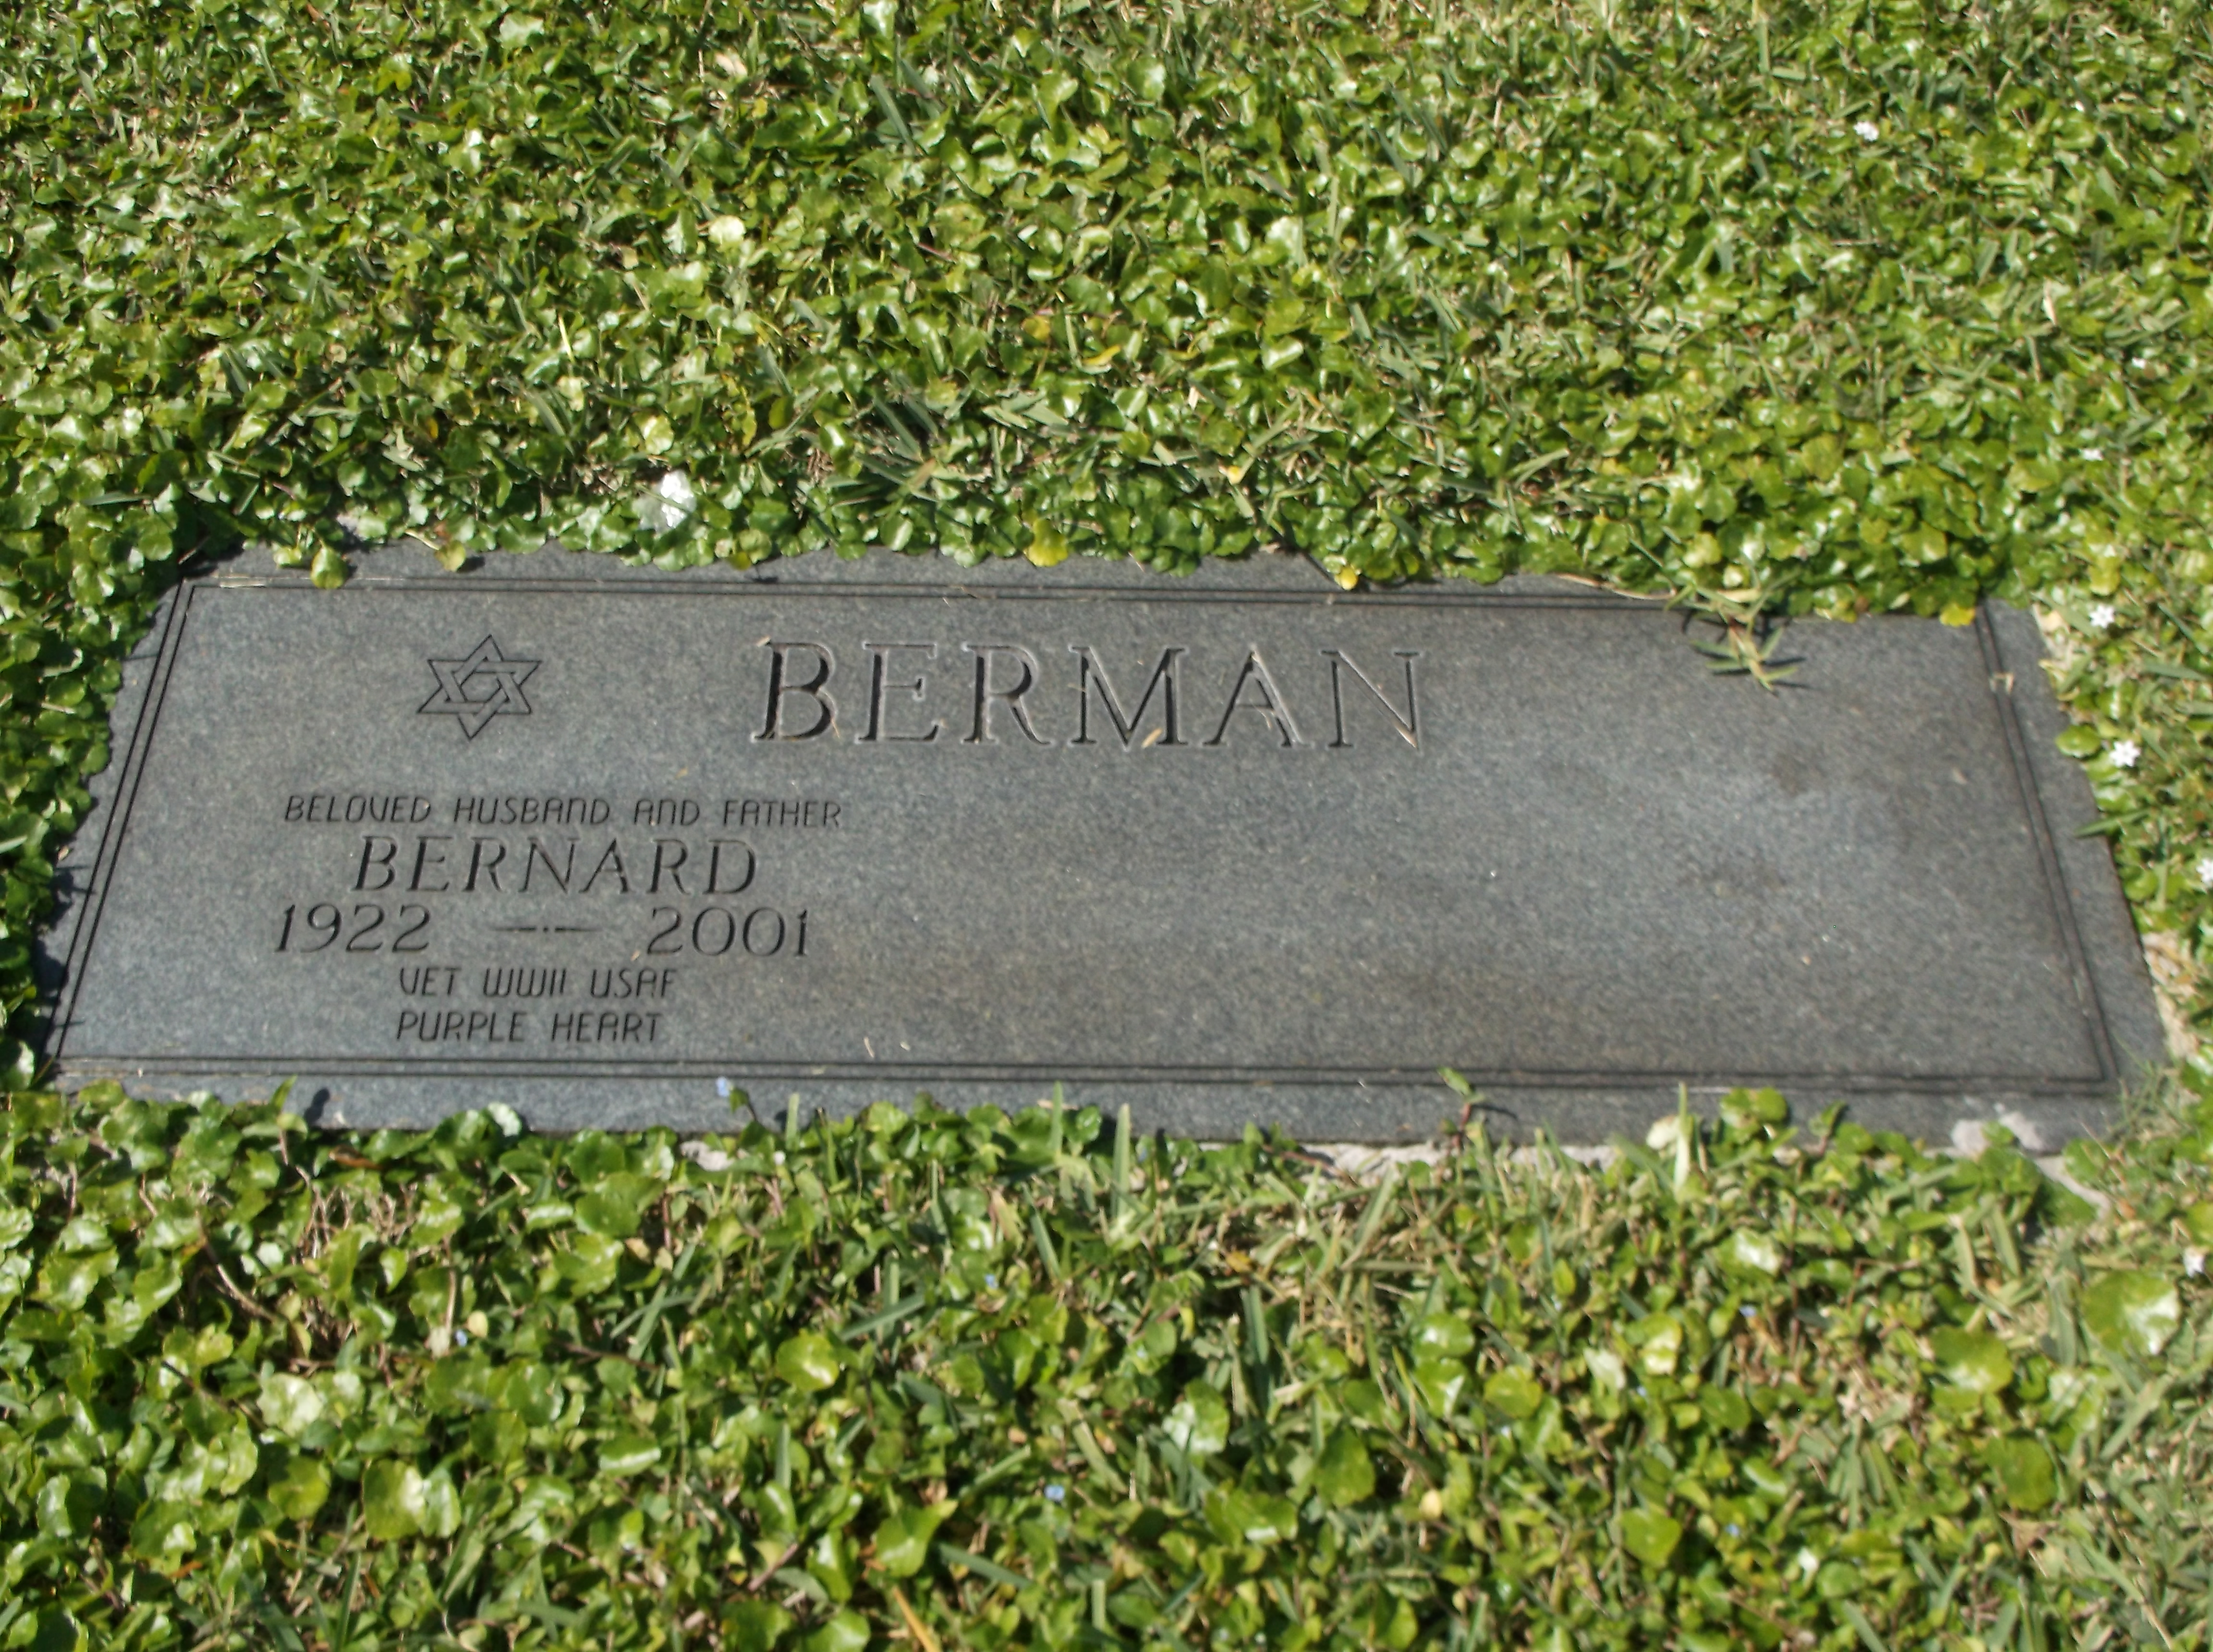 Bernard Berman